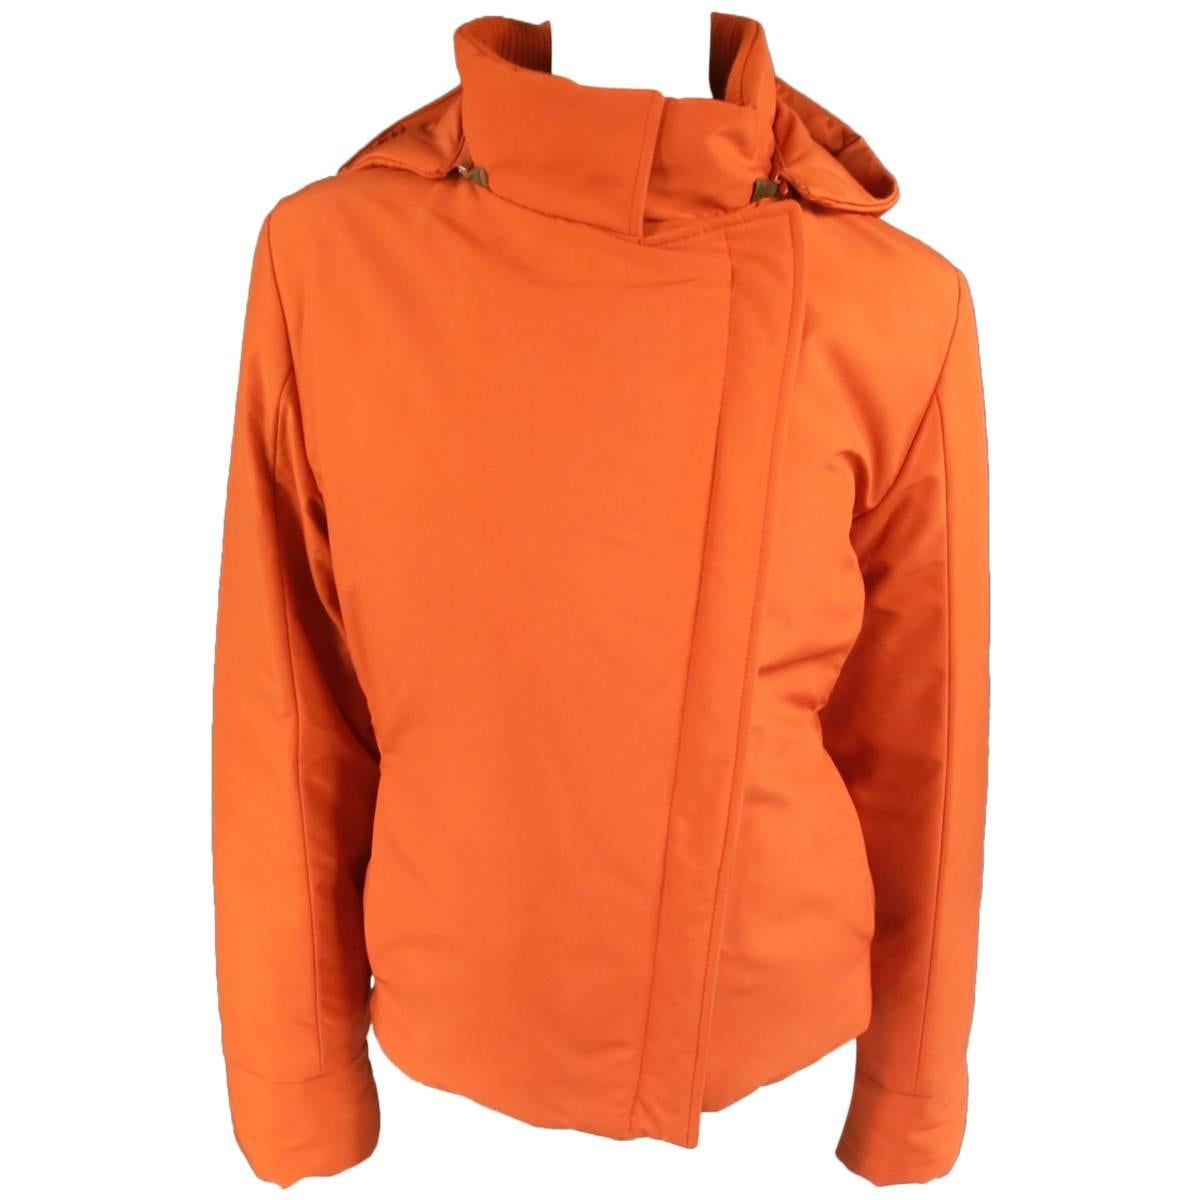 LORO PIANA Jacket - Size 12 Orange Nylon Padded Storm System Hood Ski Coat